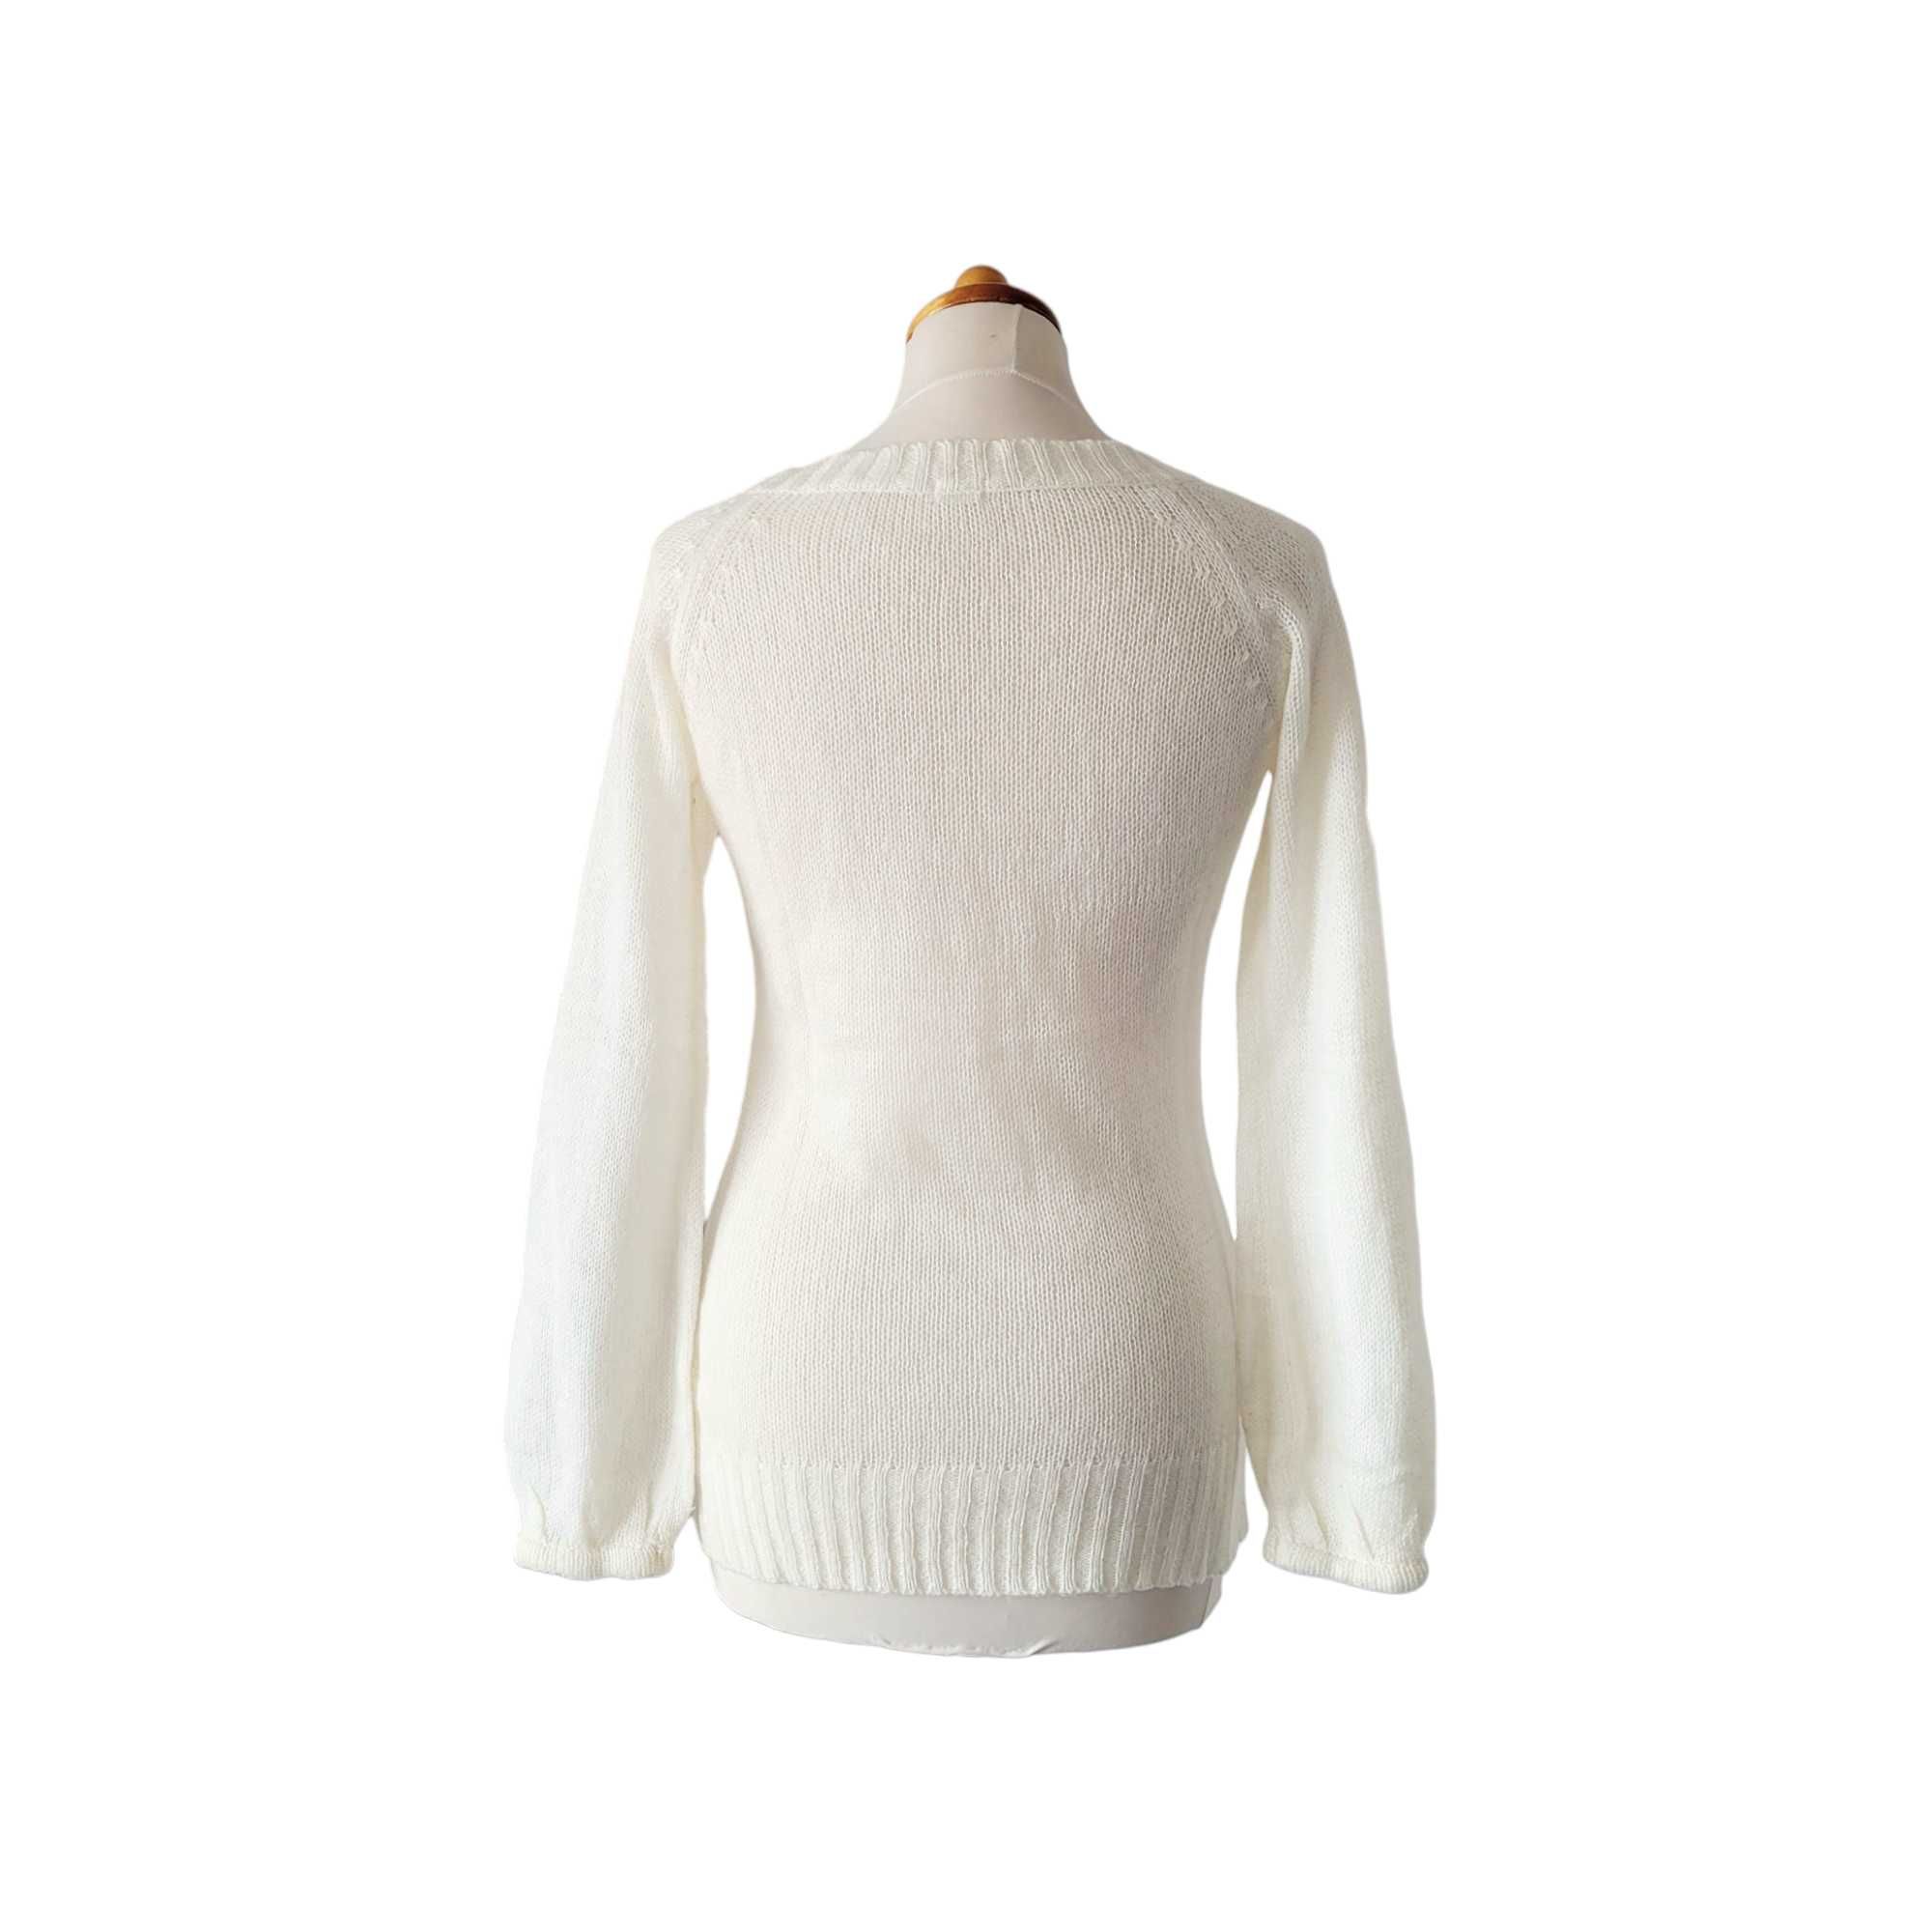 Kremowy ażurowy sweter damski vintage S M plecionki rozszerzane rękawy